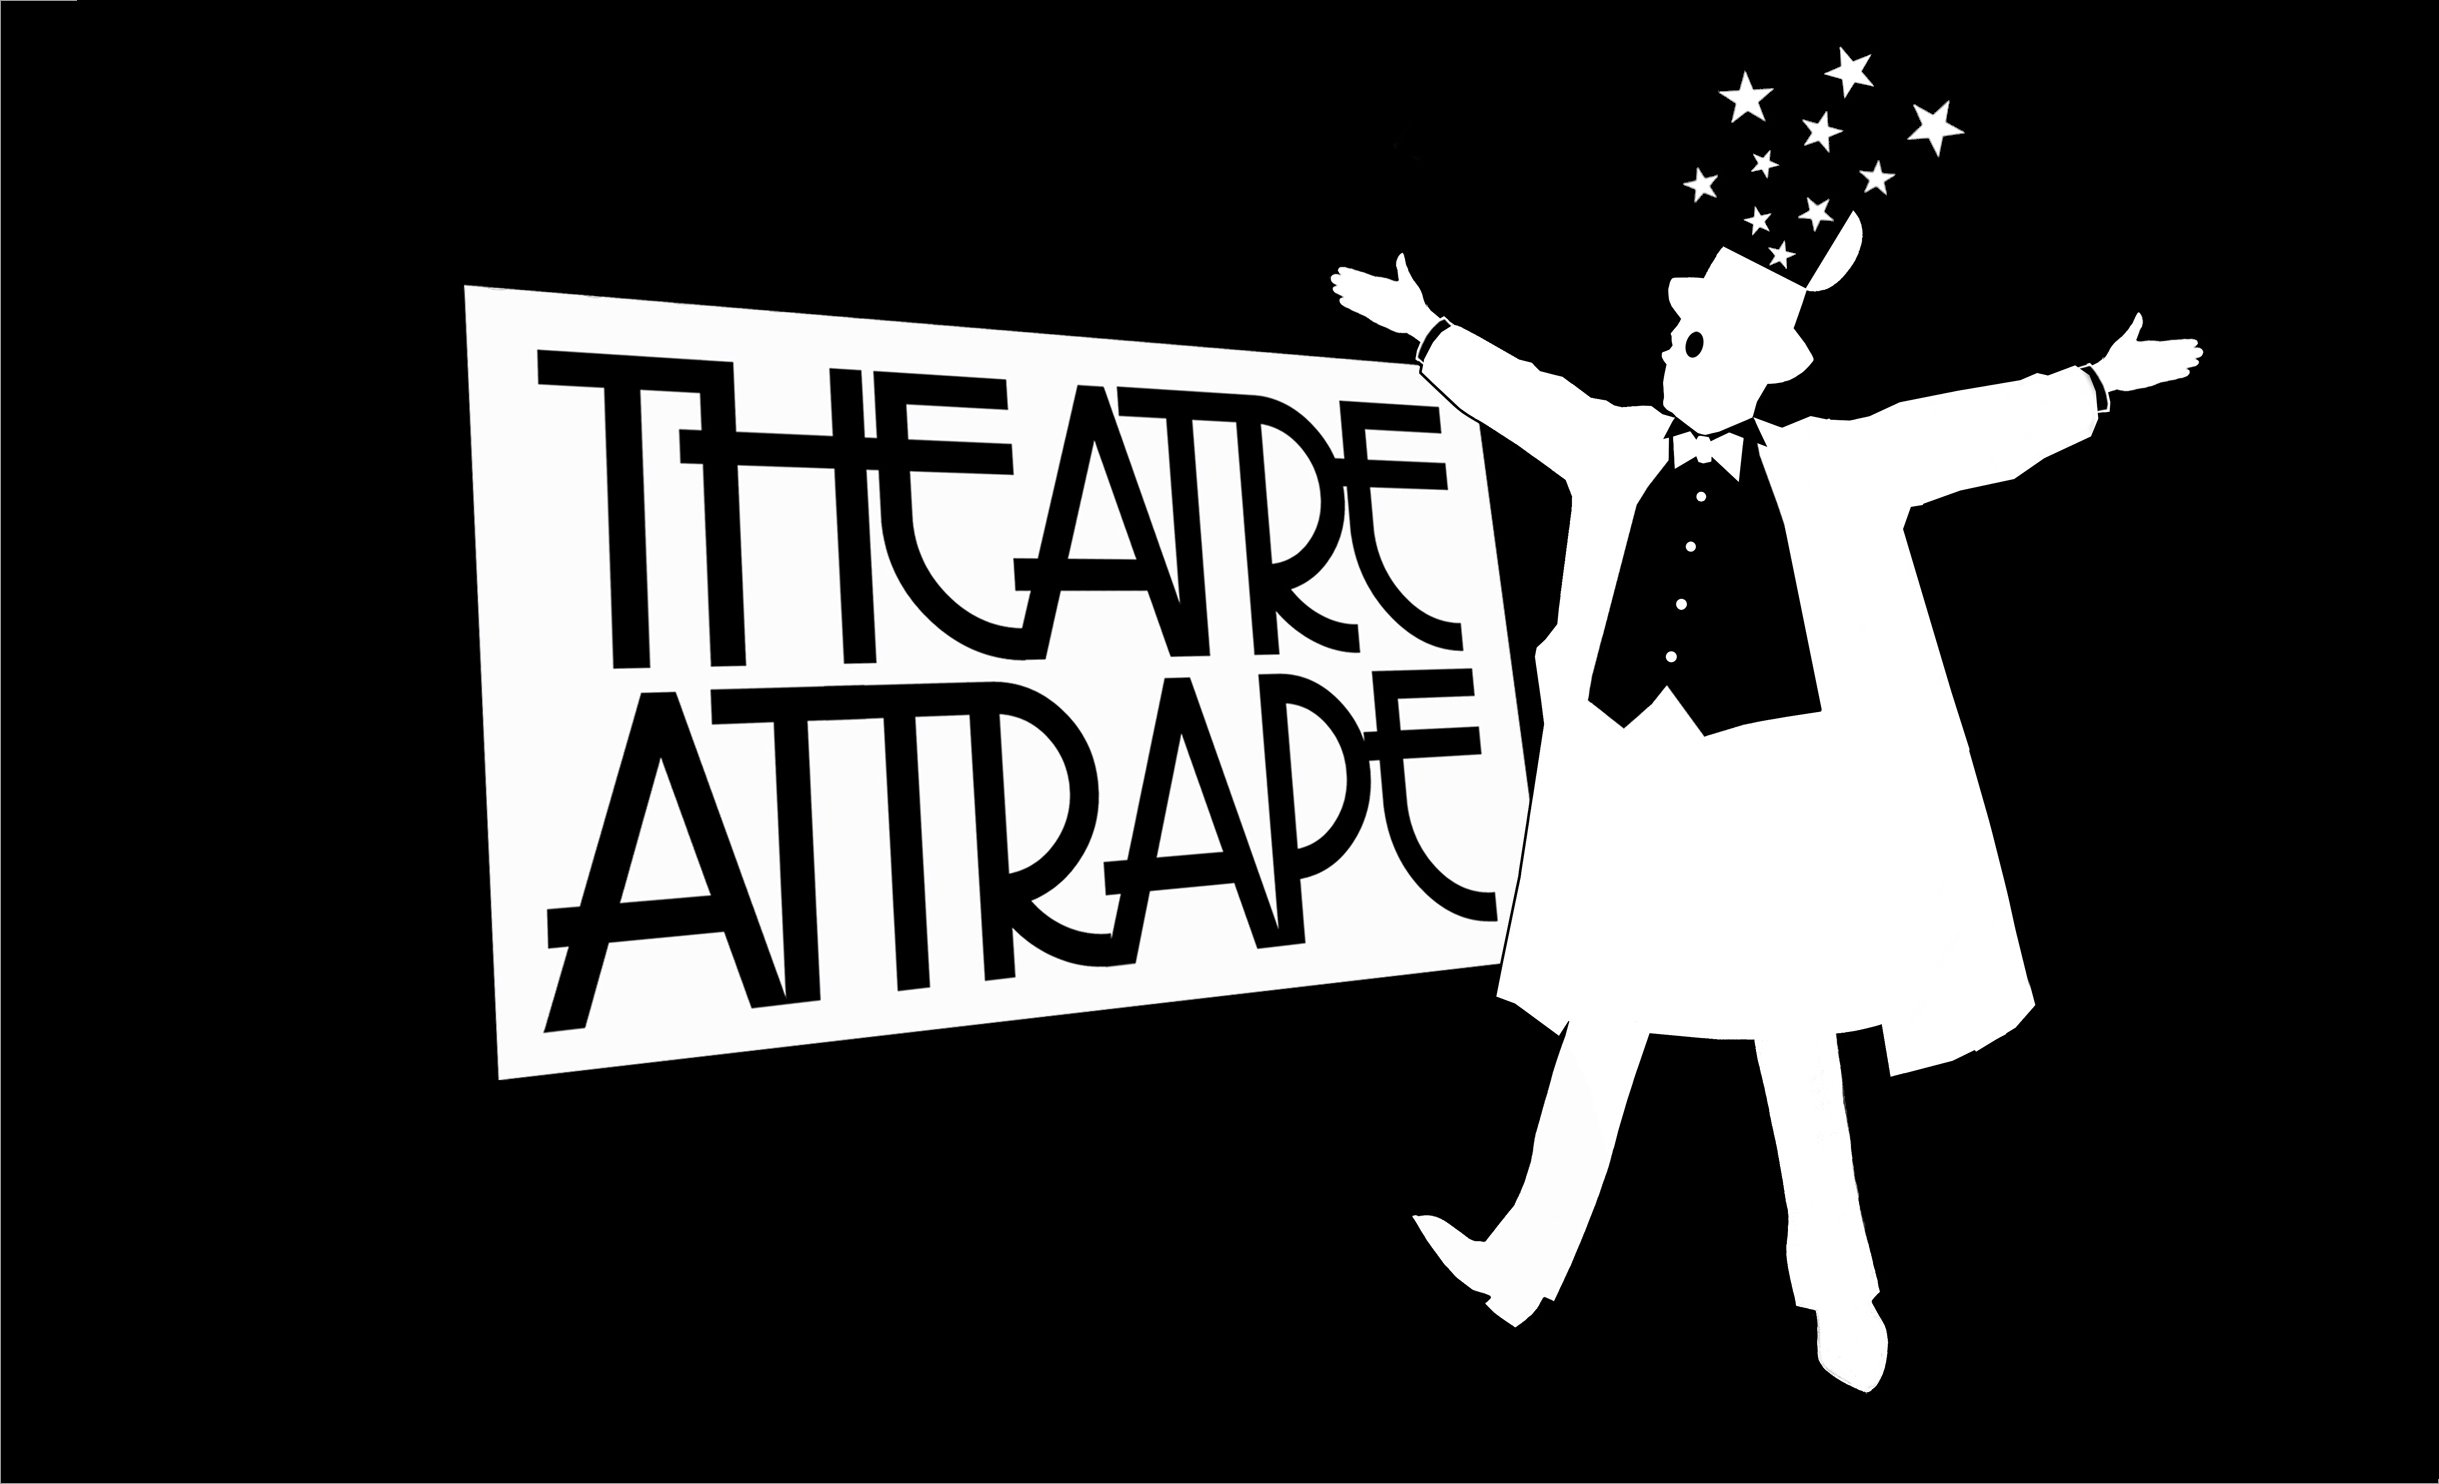 Theatre Attrape